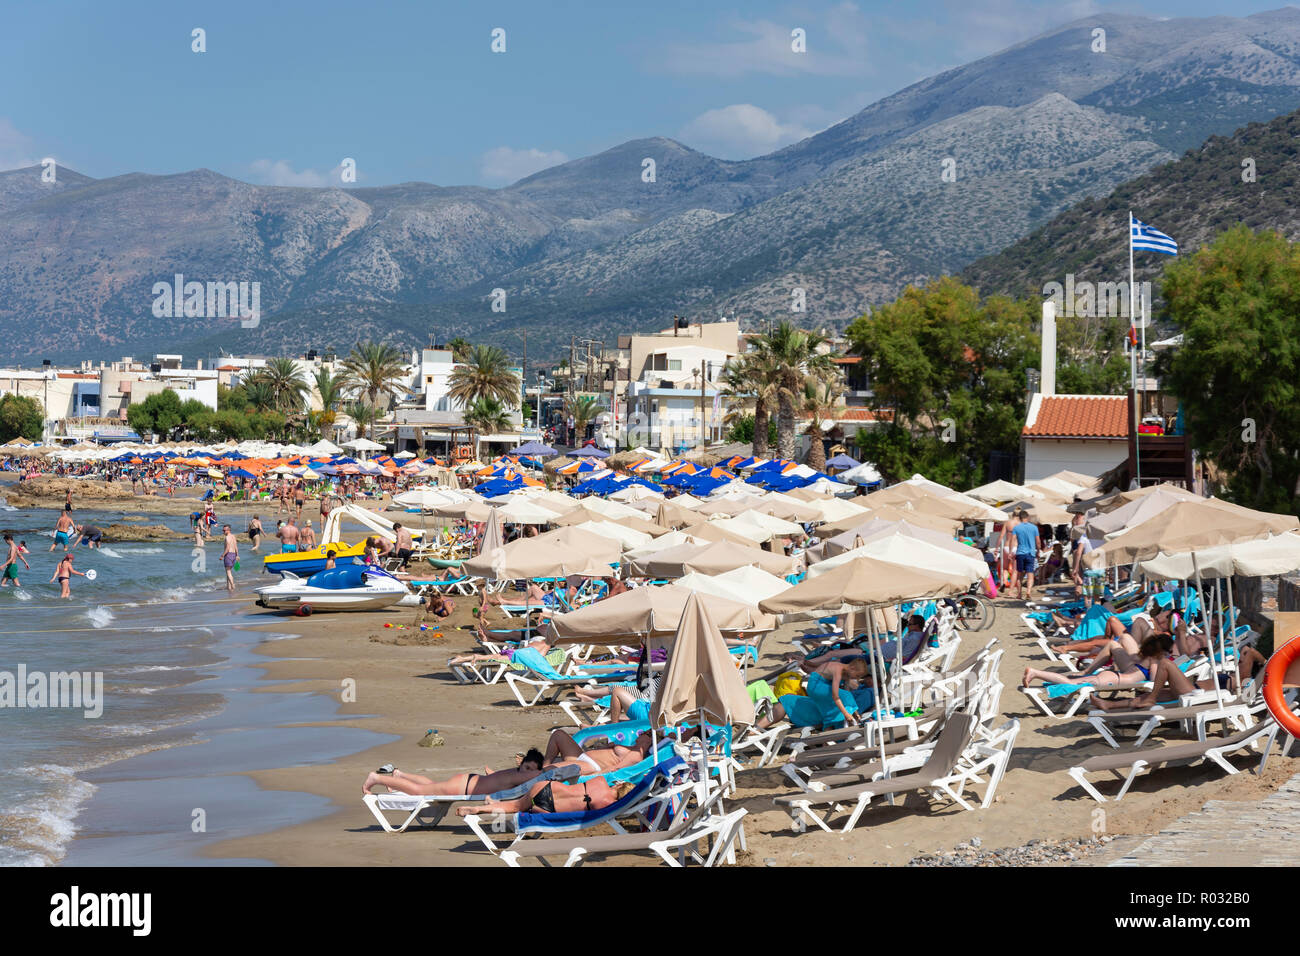 Vista della spiaggia e resort, Stalis (Stalida), Regione di Irakleio, Creta (Kriti), Grecia Foto Stock